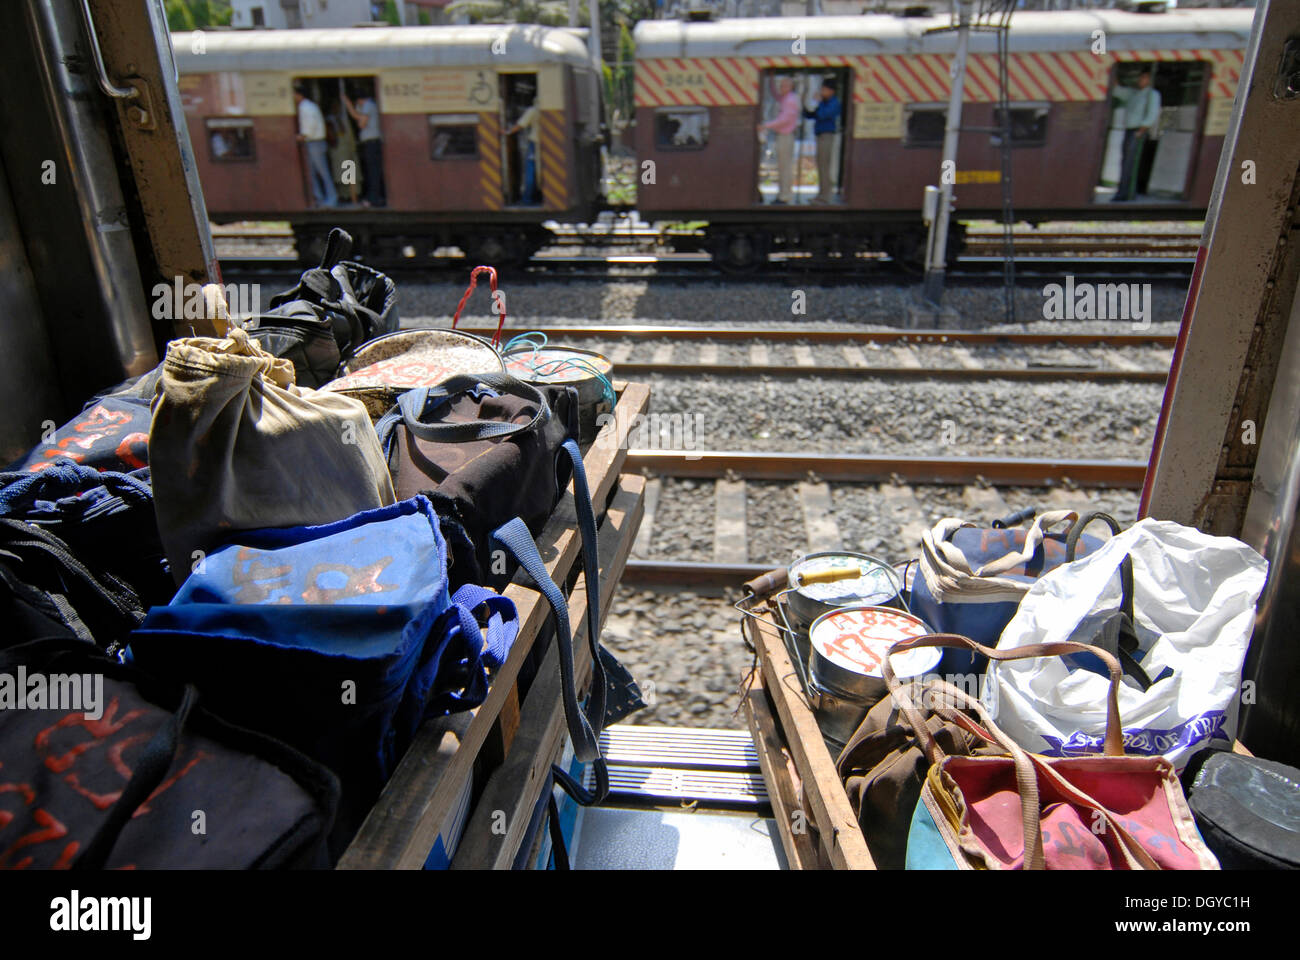 Dabbas ou les contenants d'aliments dans un train local, Mumbai, Inde, Asie Banque D'Images